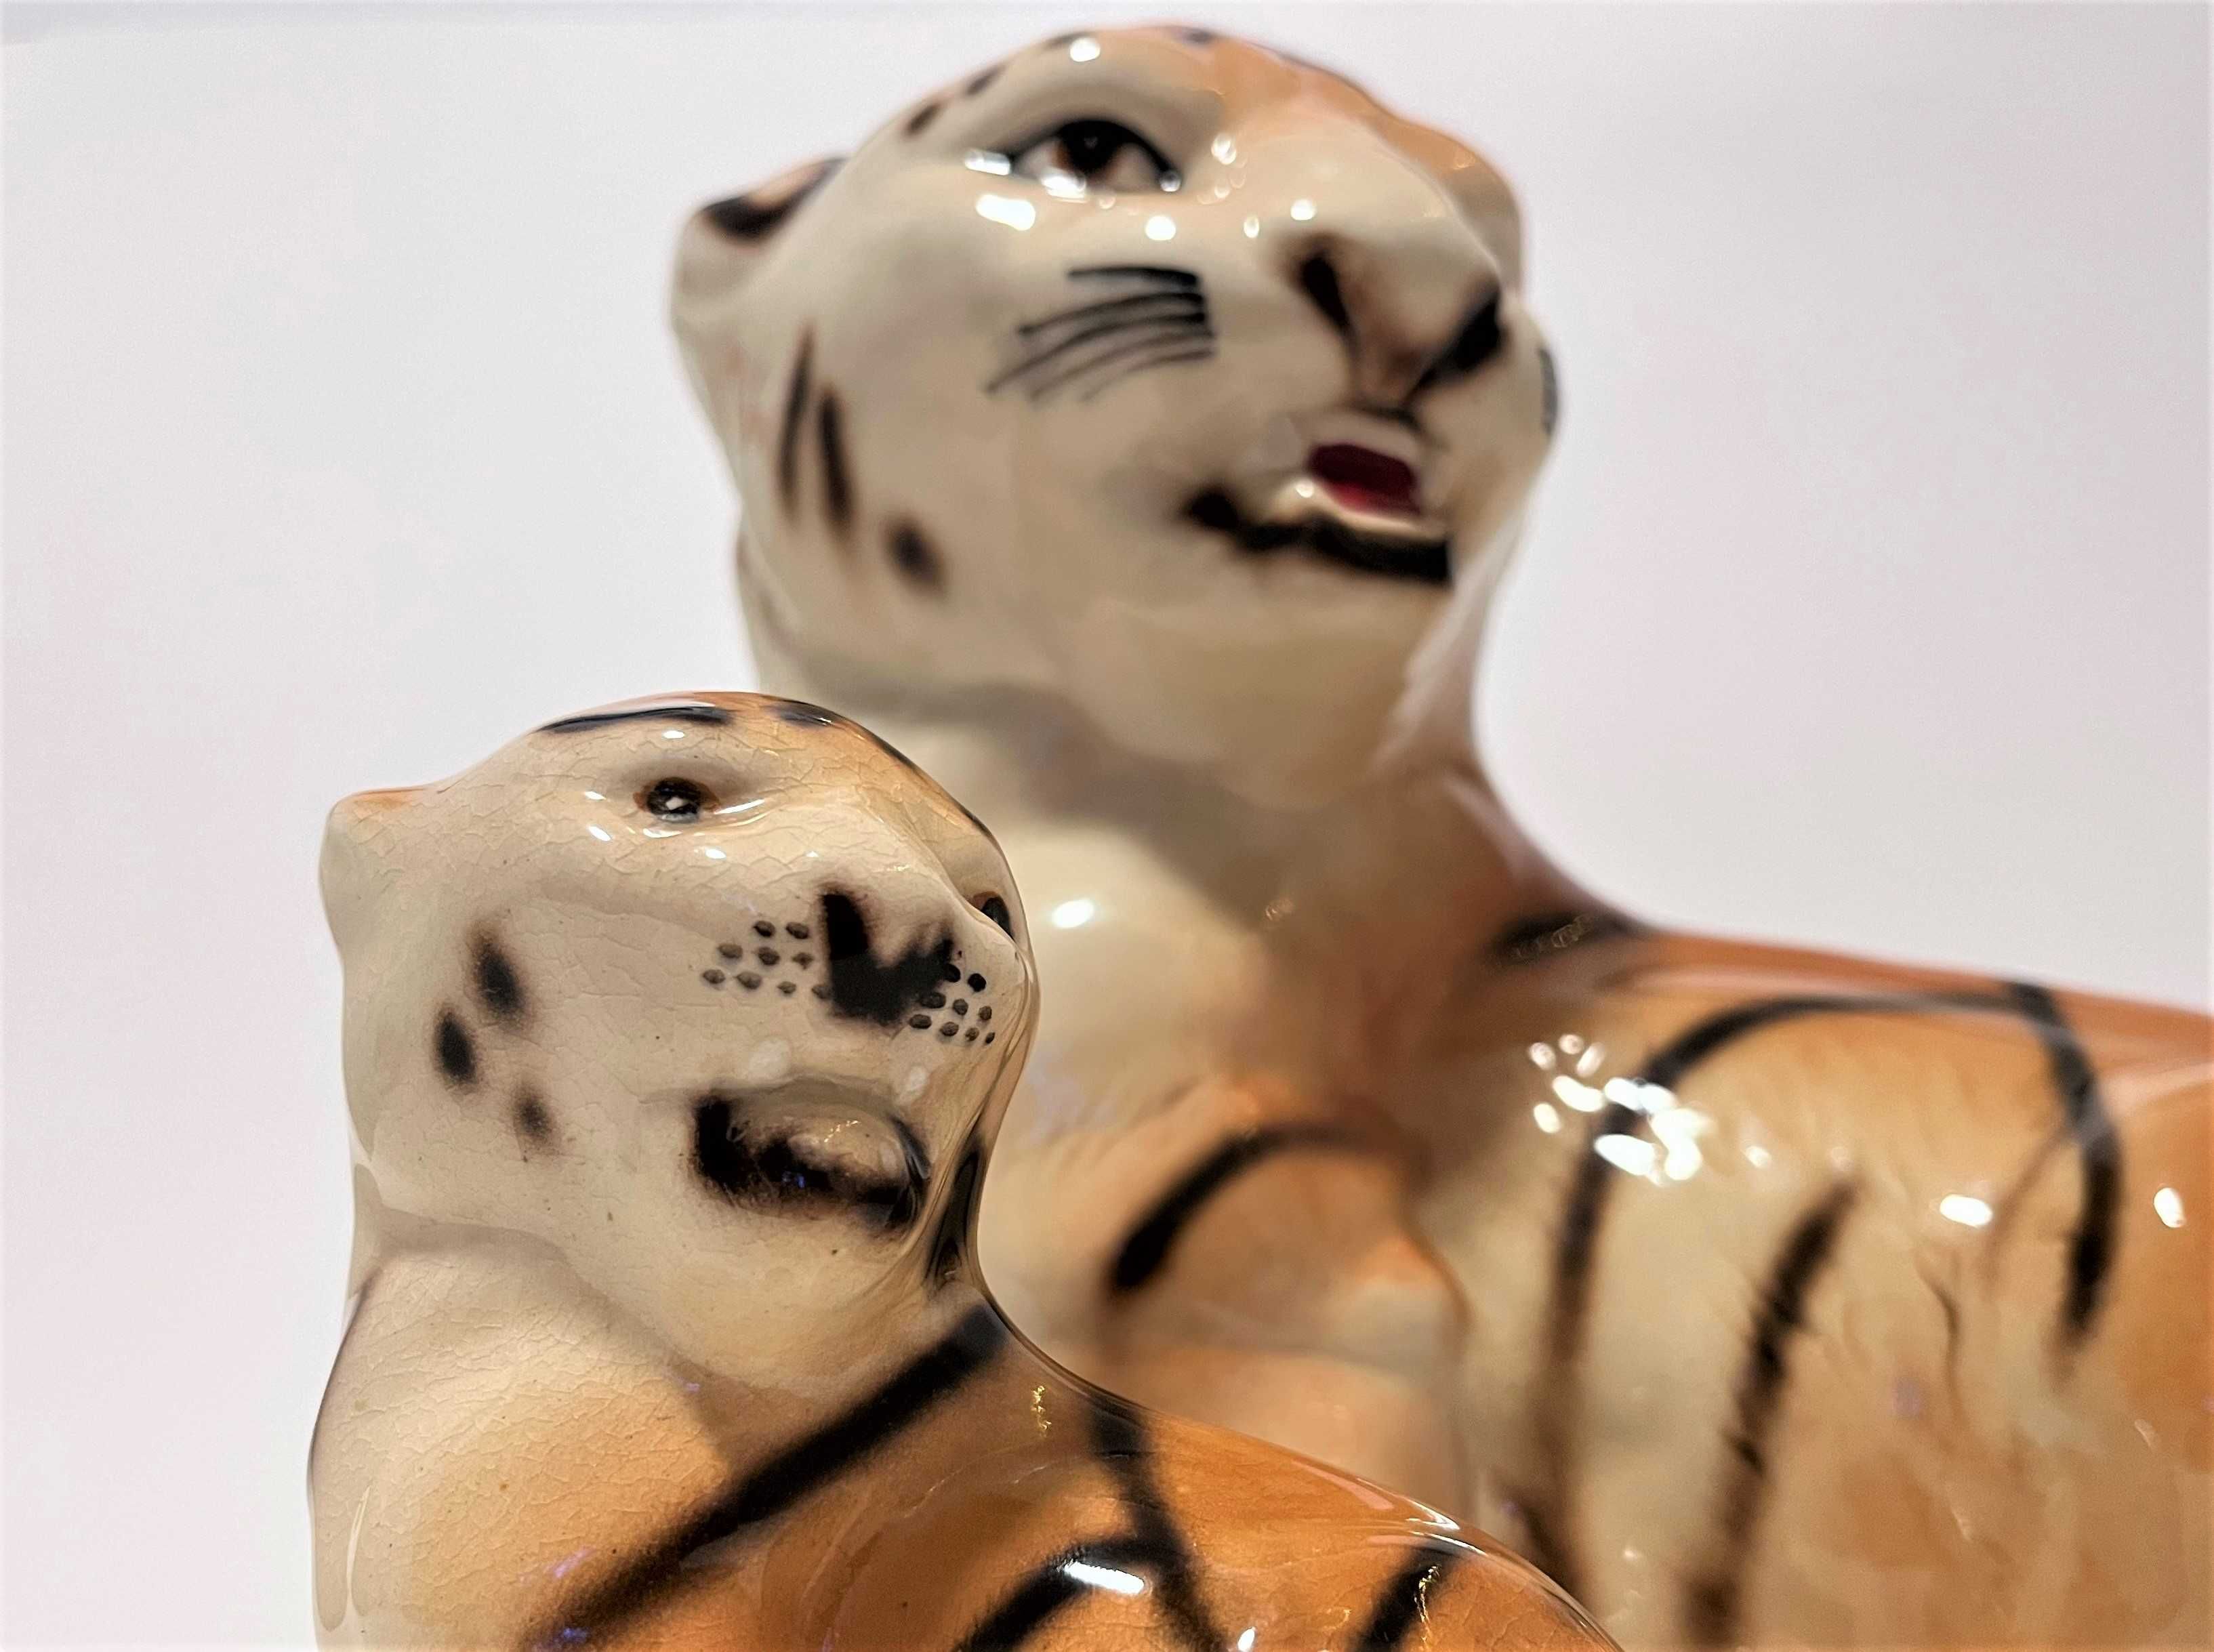 2x figurka ceramiczna Tygrys- design Włochy? Mid century design